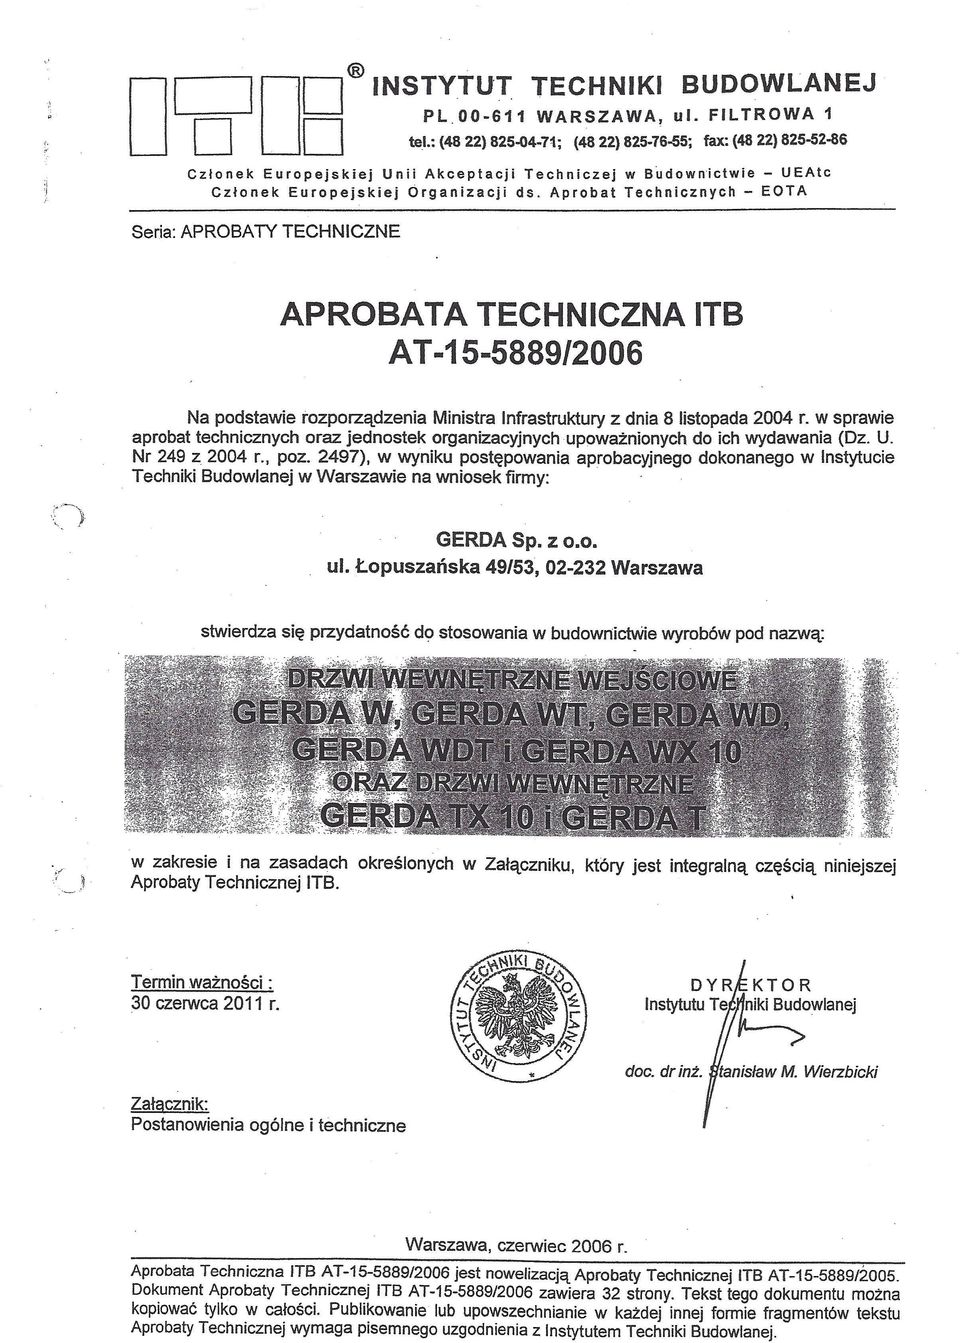 Aprobat w Budownictwie - UEAtc Technicznych - EOTA Seria: APROBATY TECHNICZNE APROBATA TECHNICZNA ITB AT -15-5889/2006 Na podstawie rozporządzenia Ministra Infrastruktury z dnia 8 listopada 2004 r.